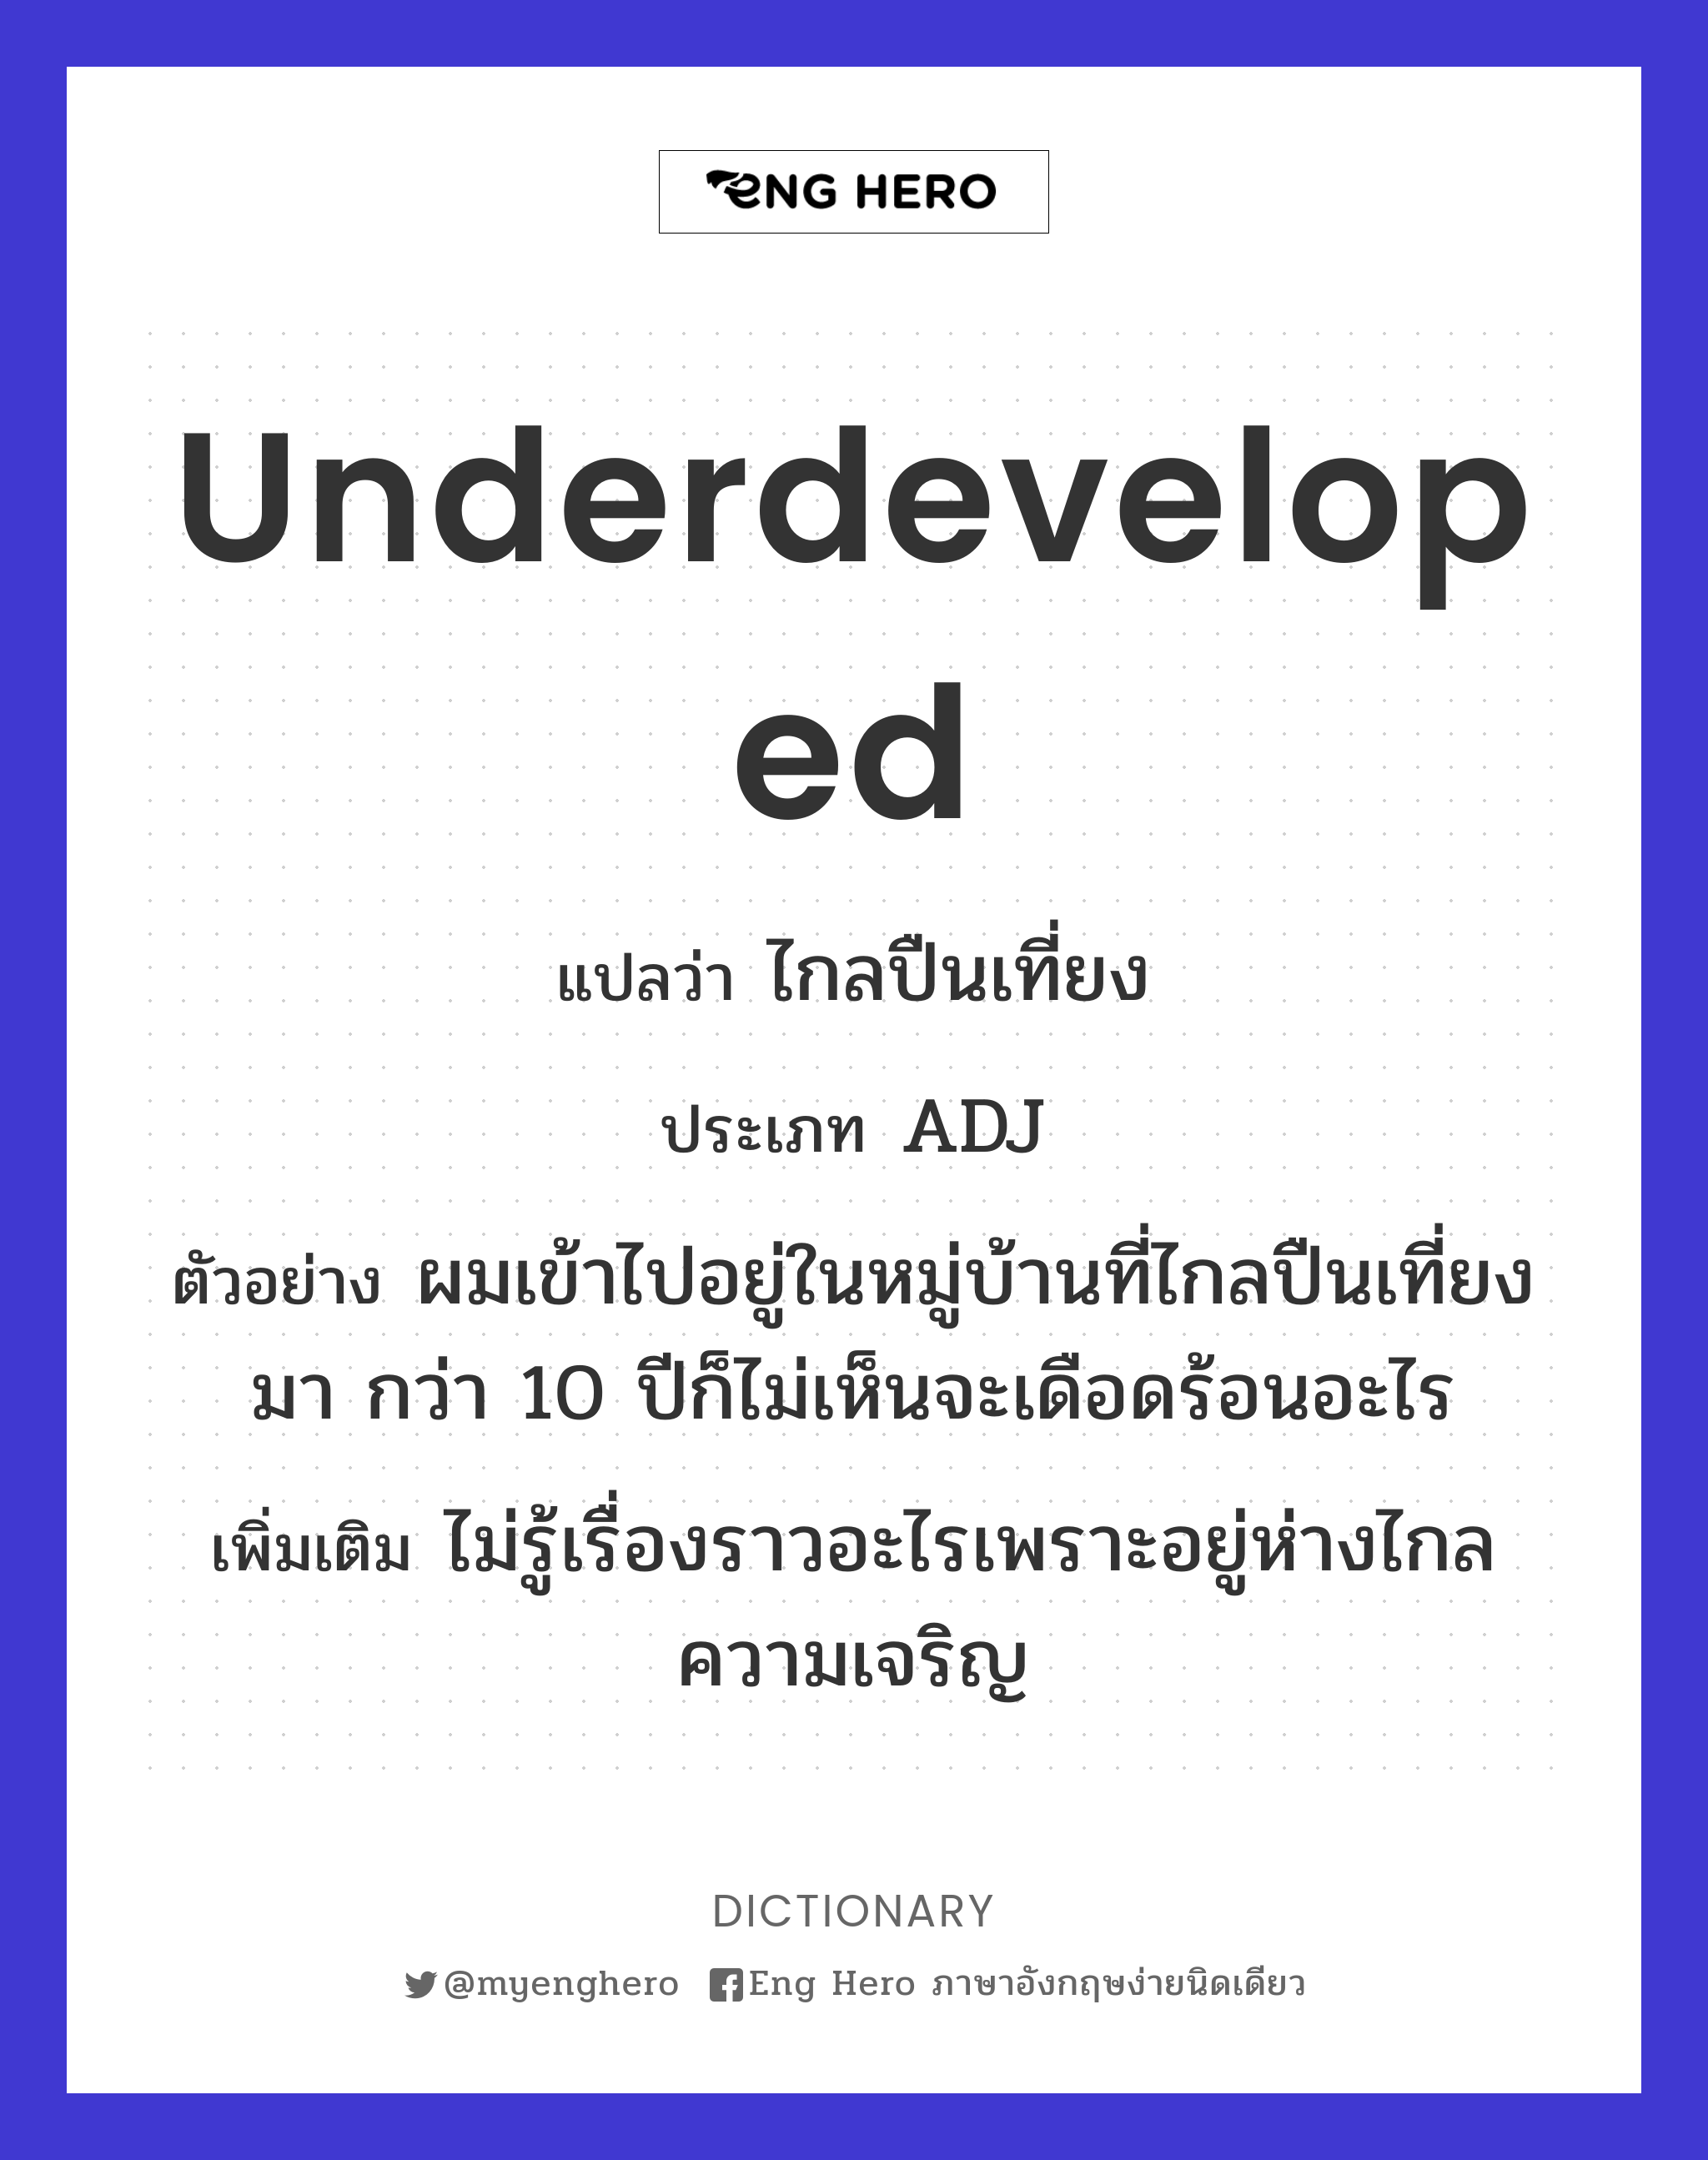 underdeveloped